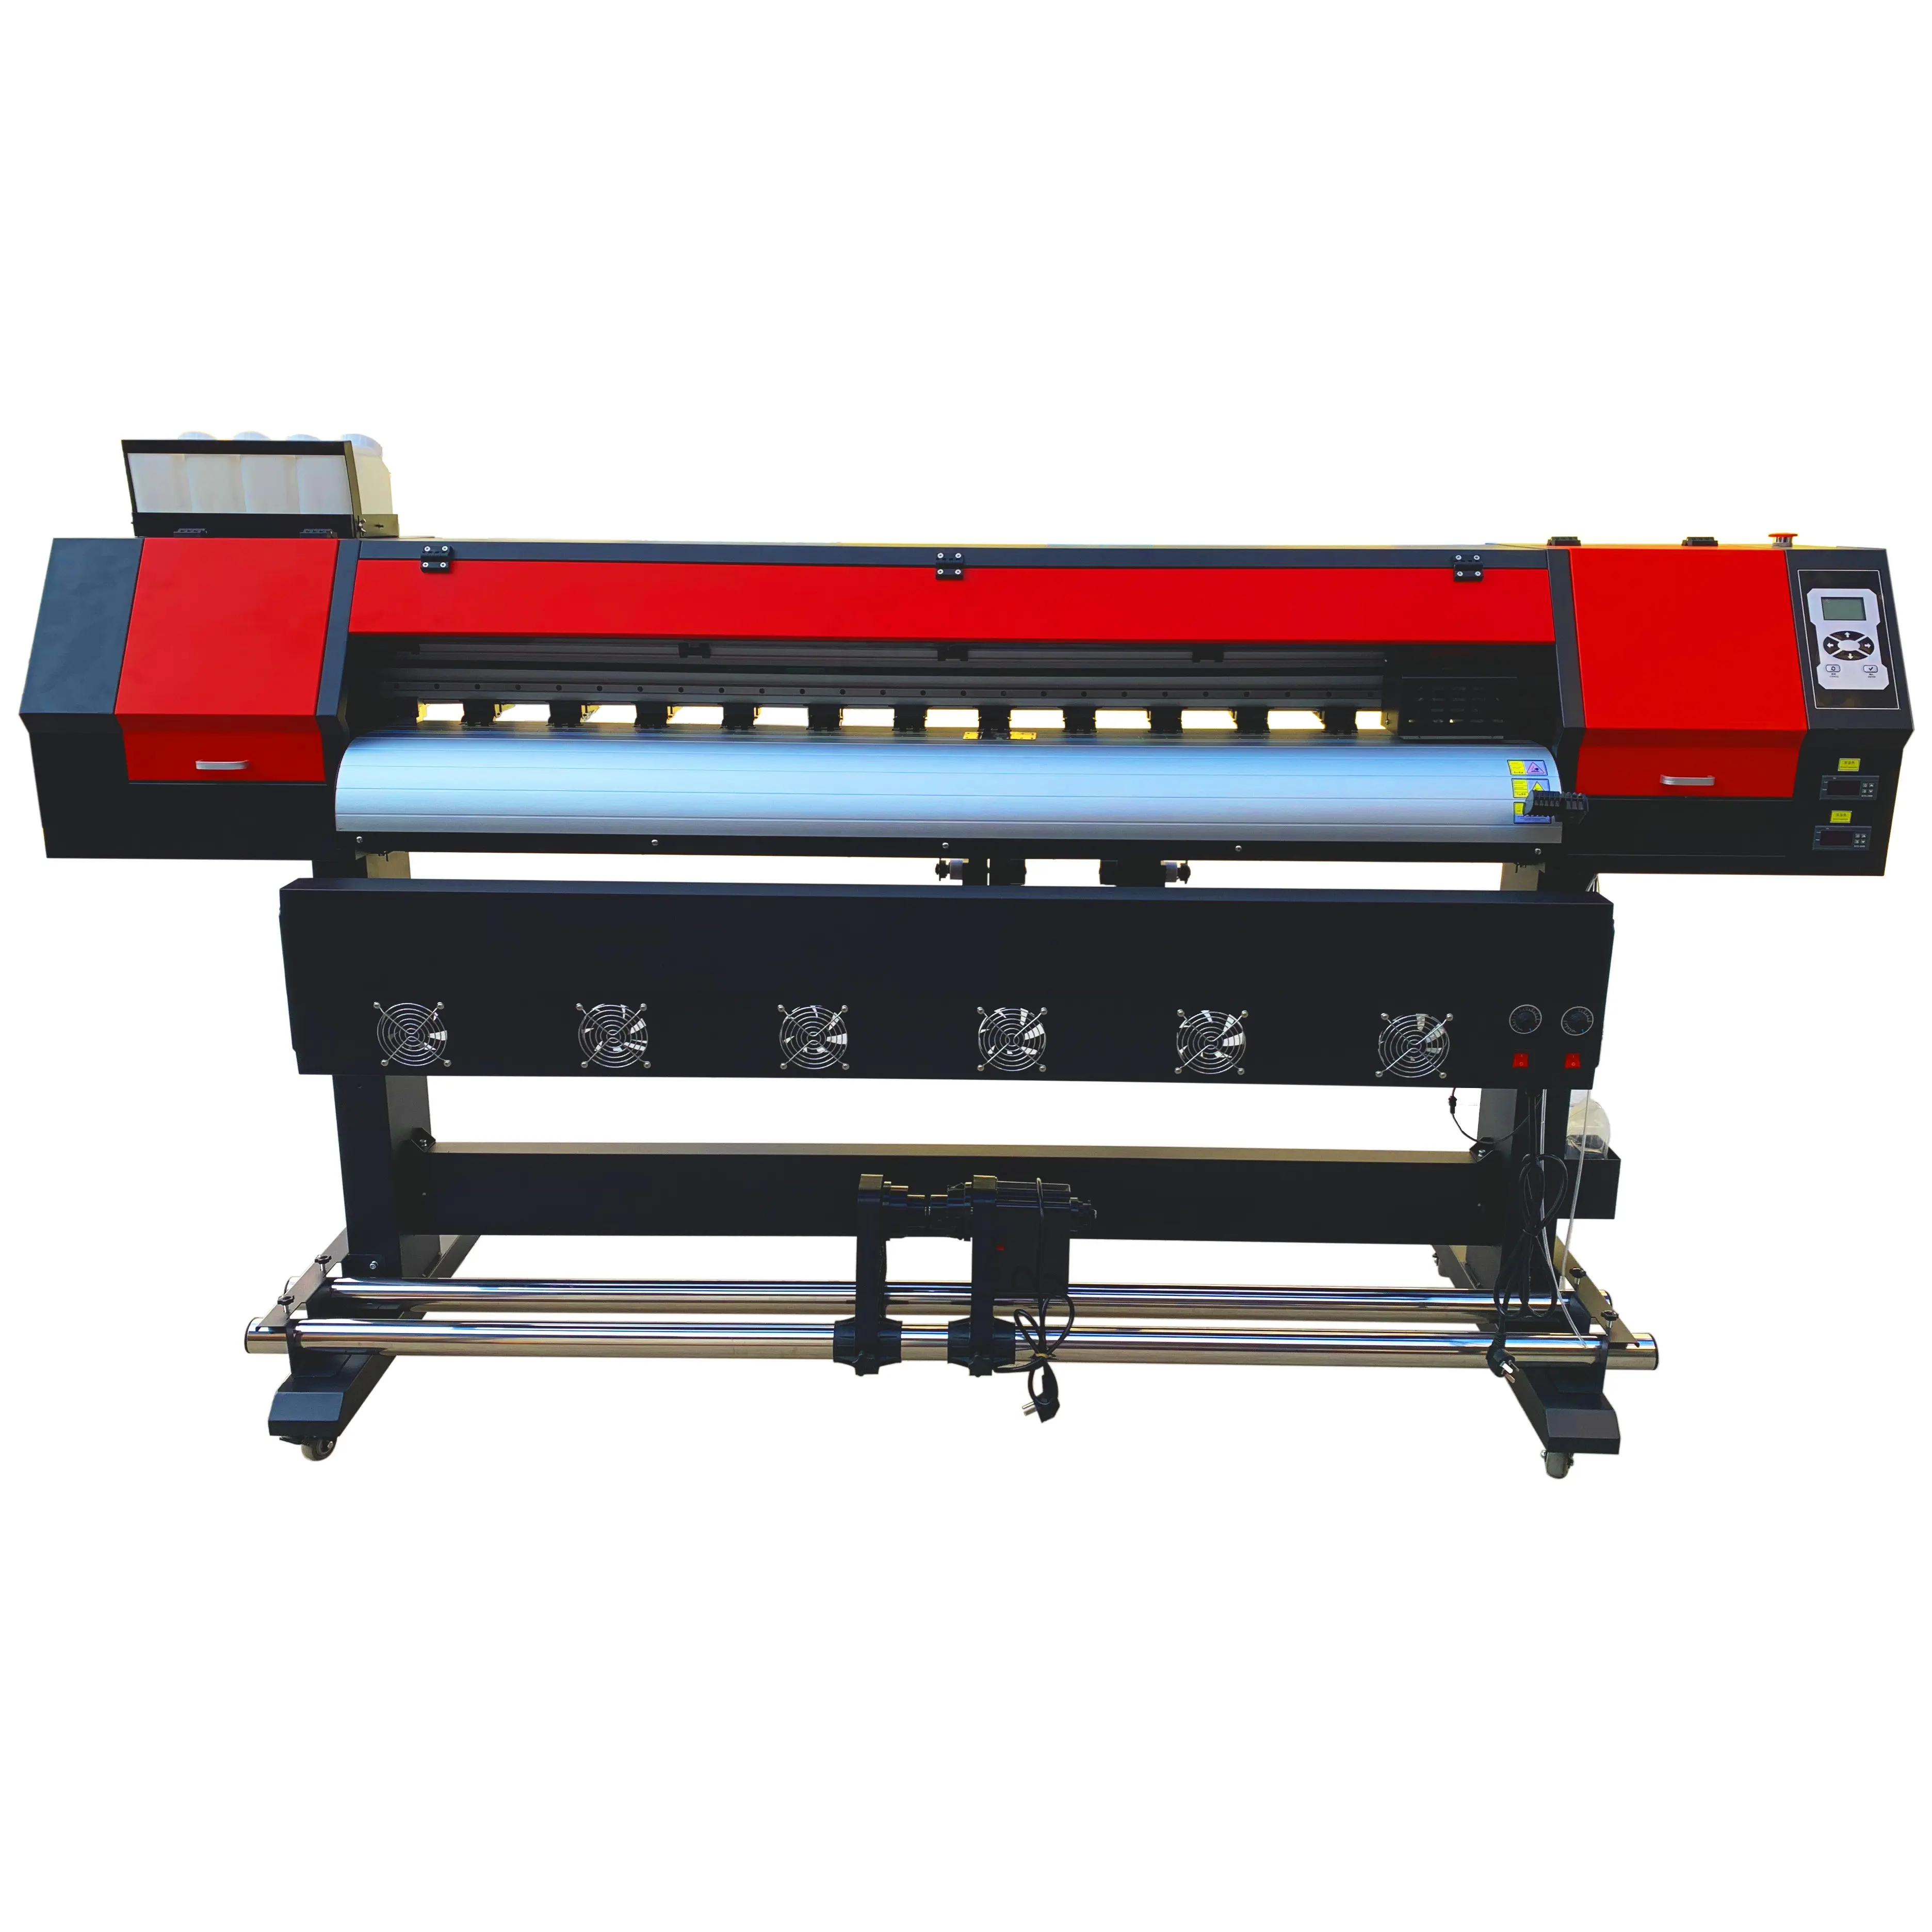 Costo economico all'ingrosso della macchina da stampa dell'insegna di grande formato della stampante del solvente di eco di prezzo basso 1.9m